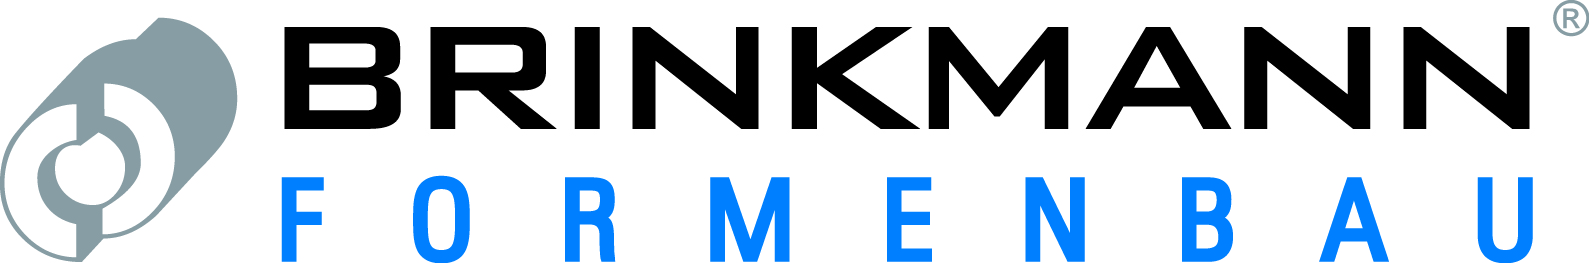 BRINKMANN Formenbau GmbH